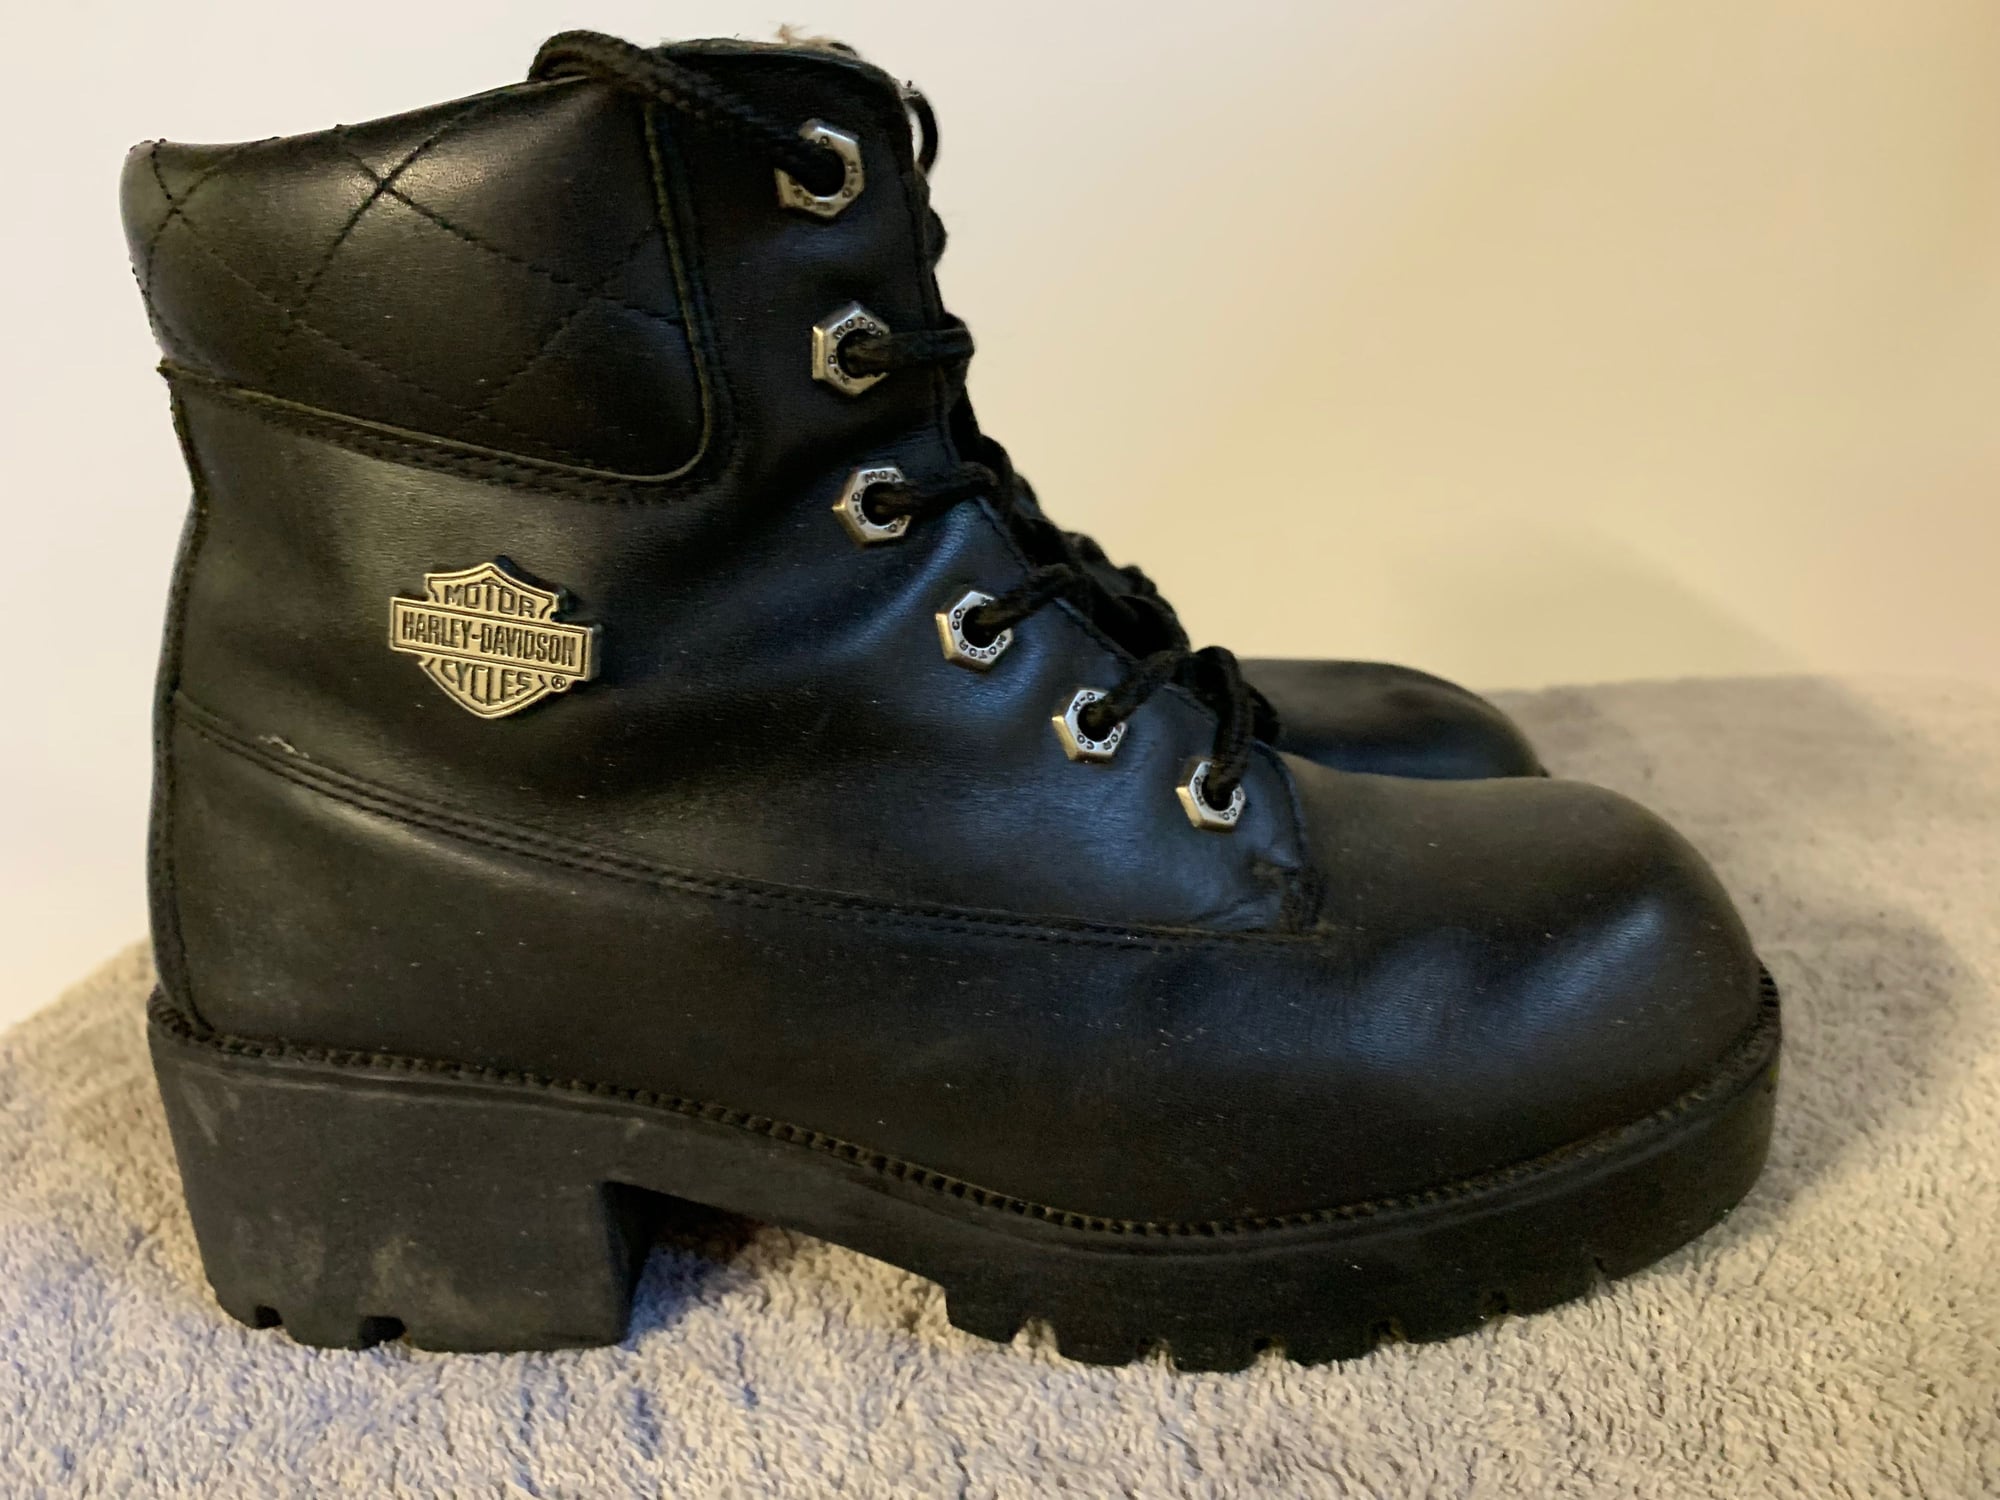 Jackets, Boots, Rain Gear - Harley Davidson Forums